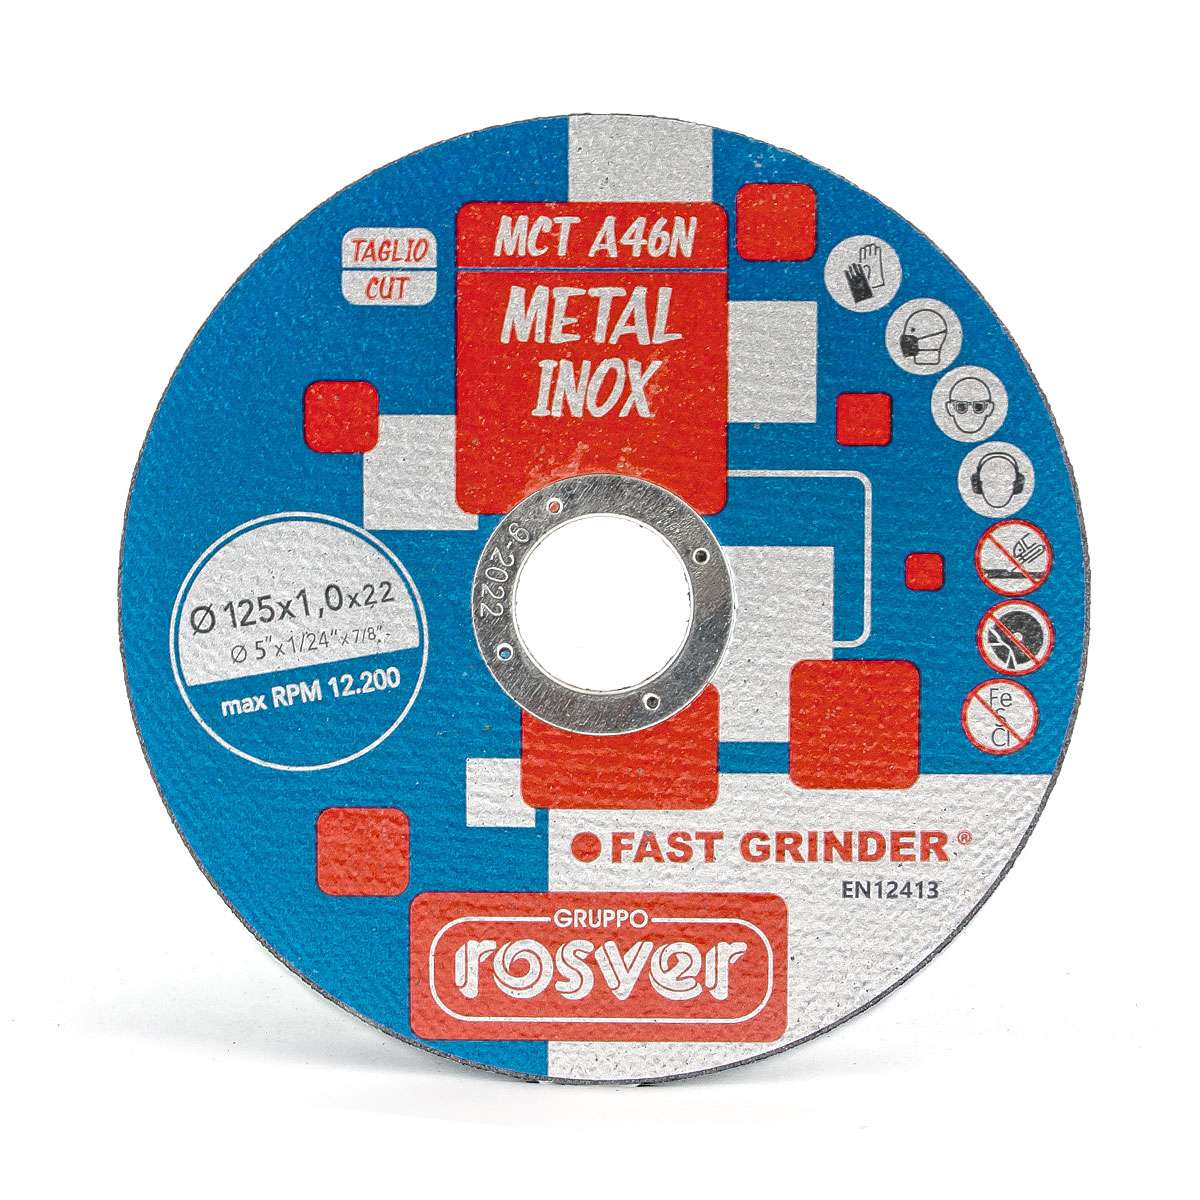 Dischi da taglio 10pz D.115x1x22 A46N per acciaio INOX - Rosver MCT11510A46NP10